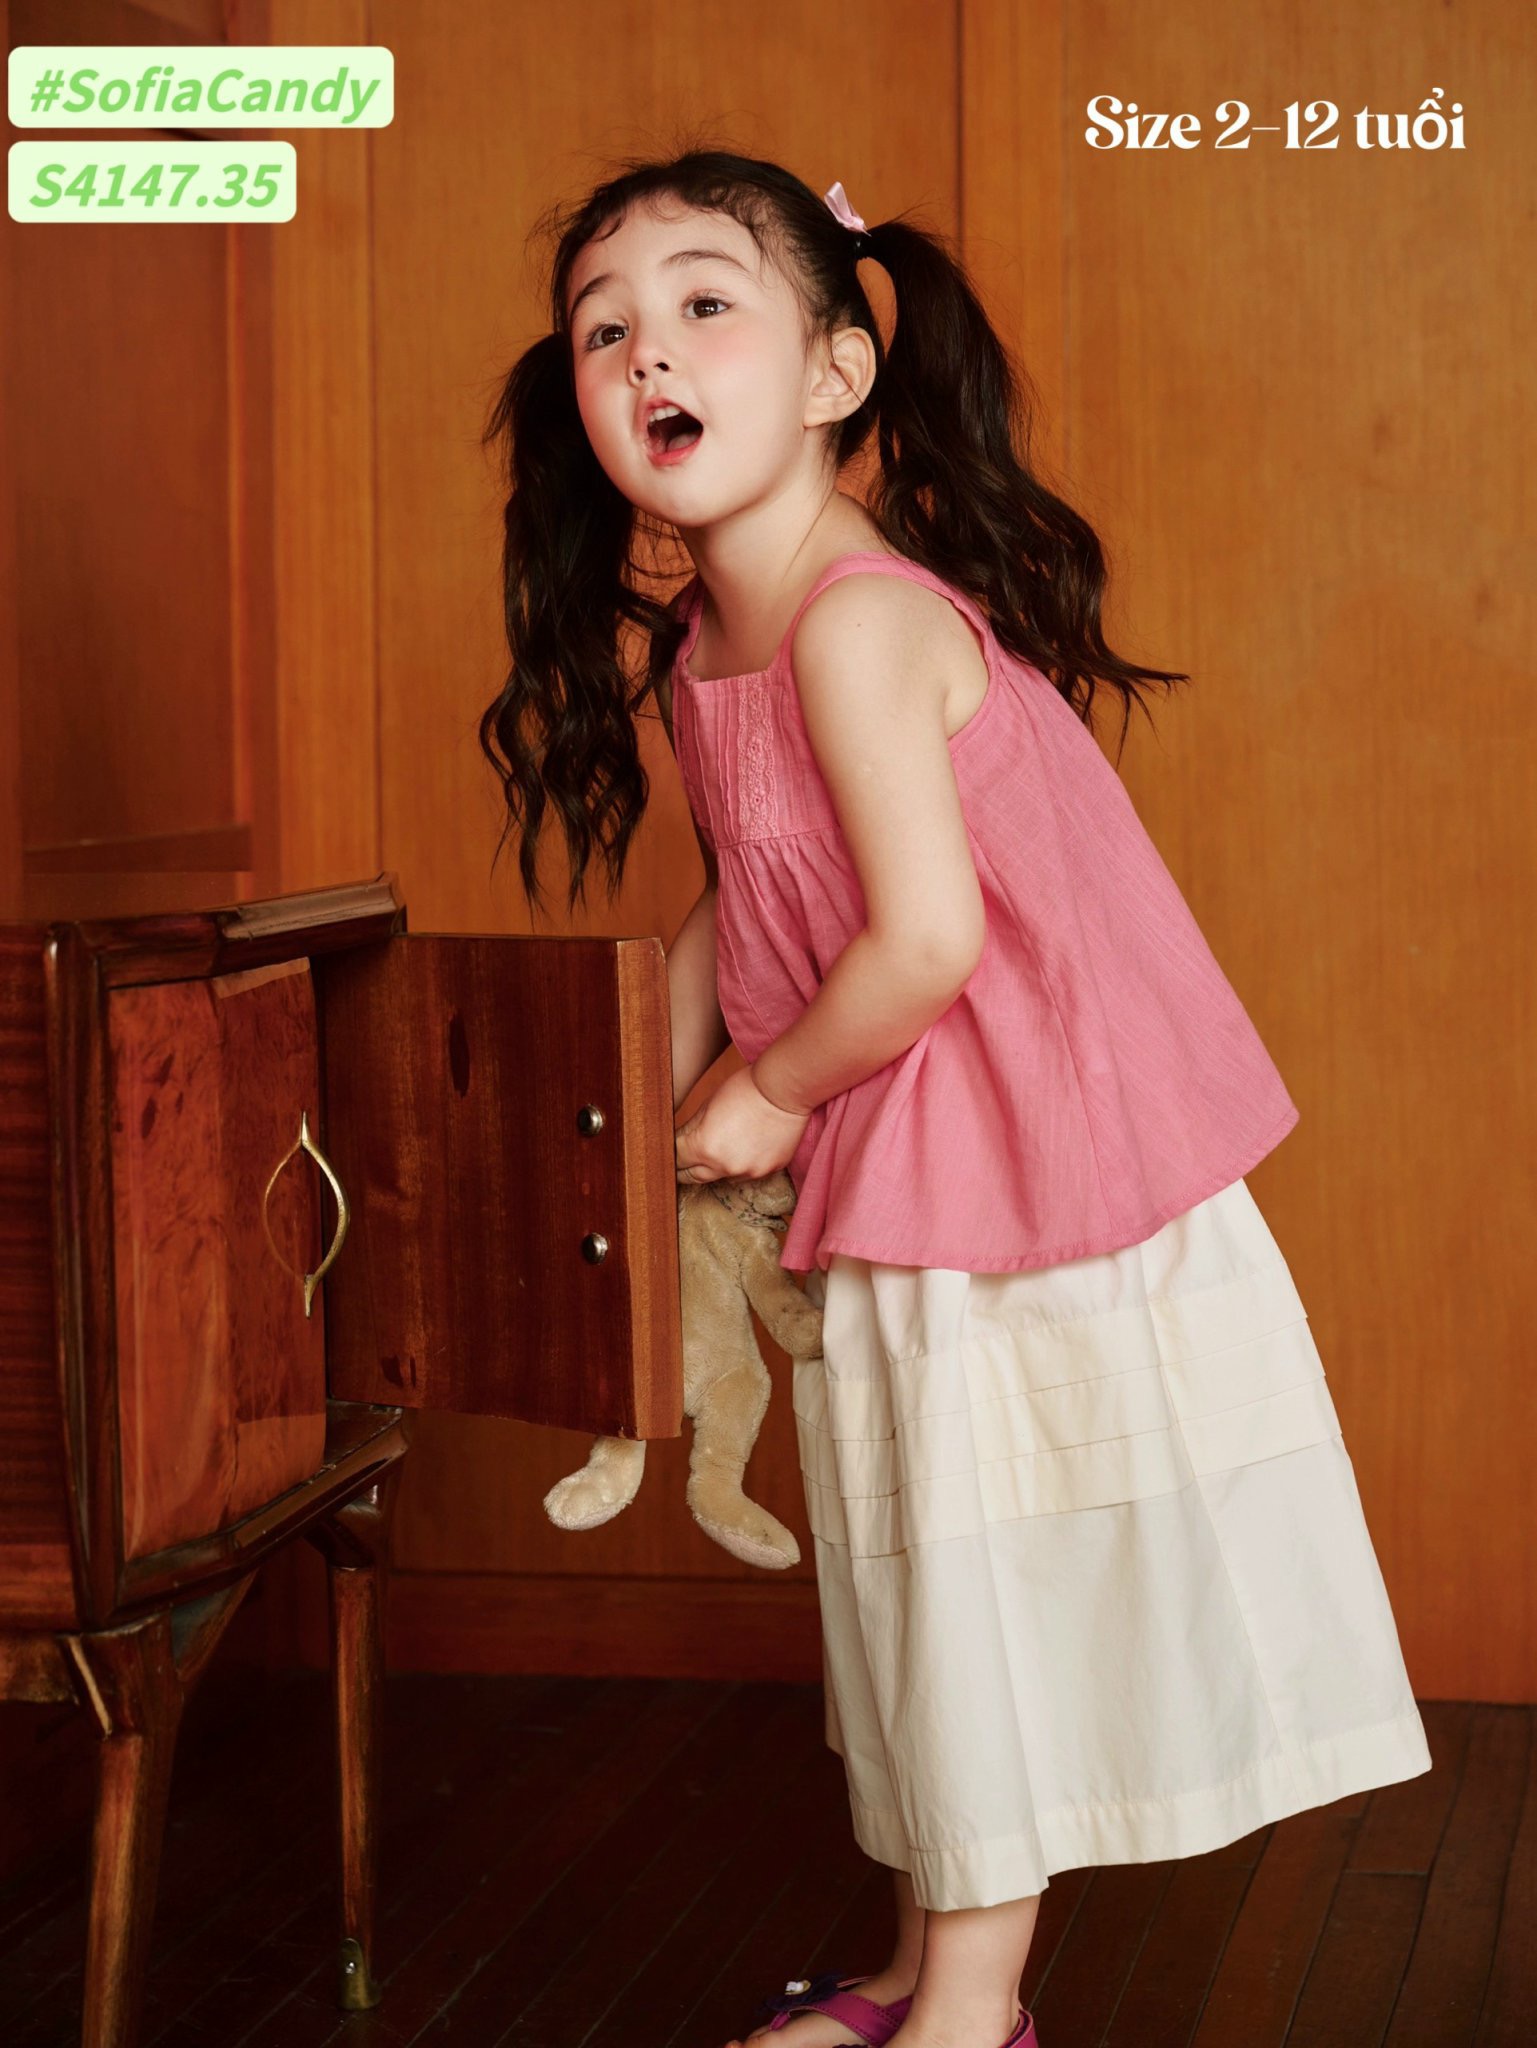 S4147 - Set bộ Sofia Candy vải thô áo 2 dây hồng phối chân váy trắng size 2-12y